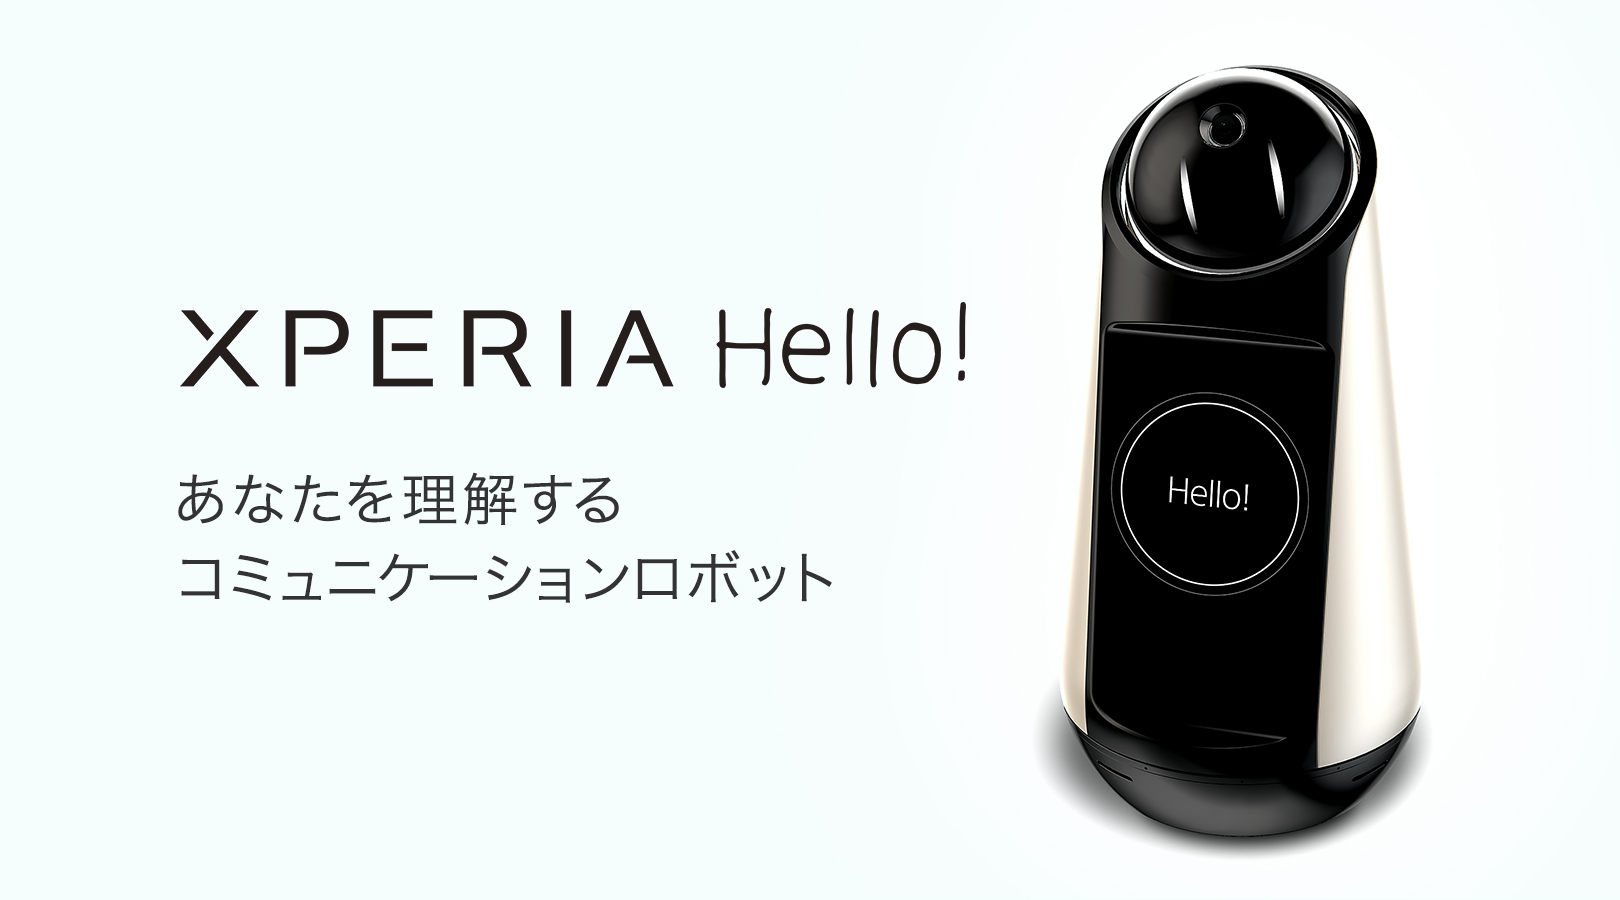 Xperia Hello!（エクスペリア ハロー）G1209 | スマートプロダクト ...